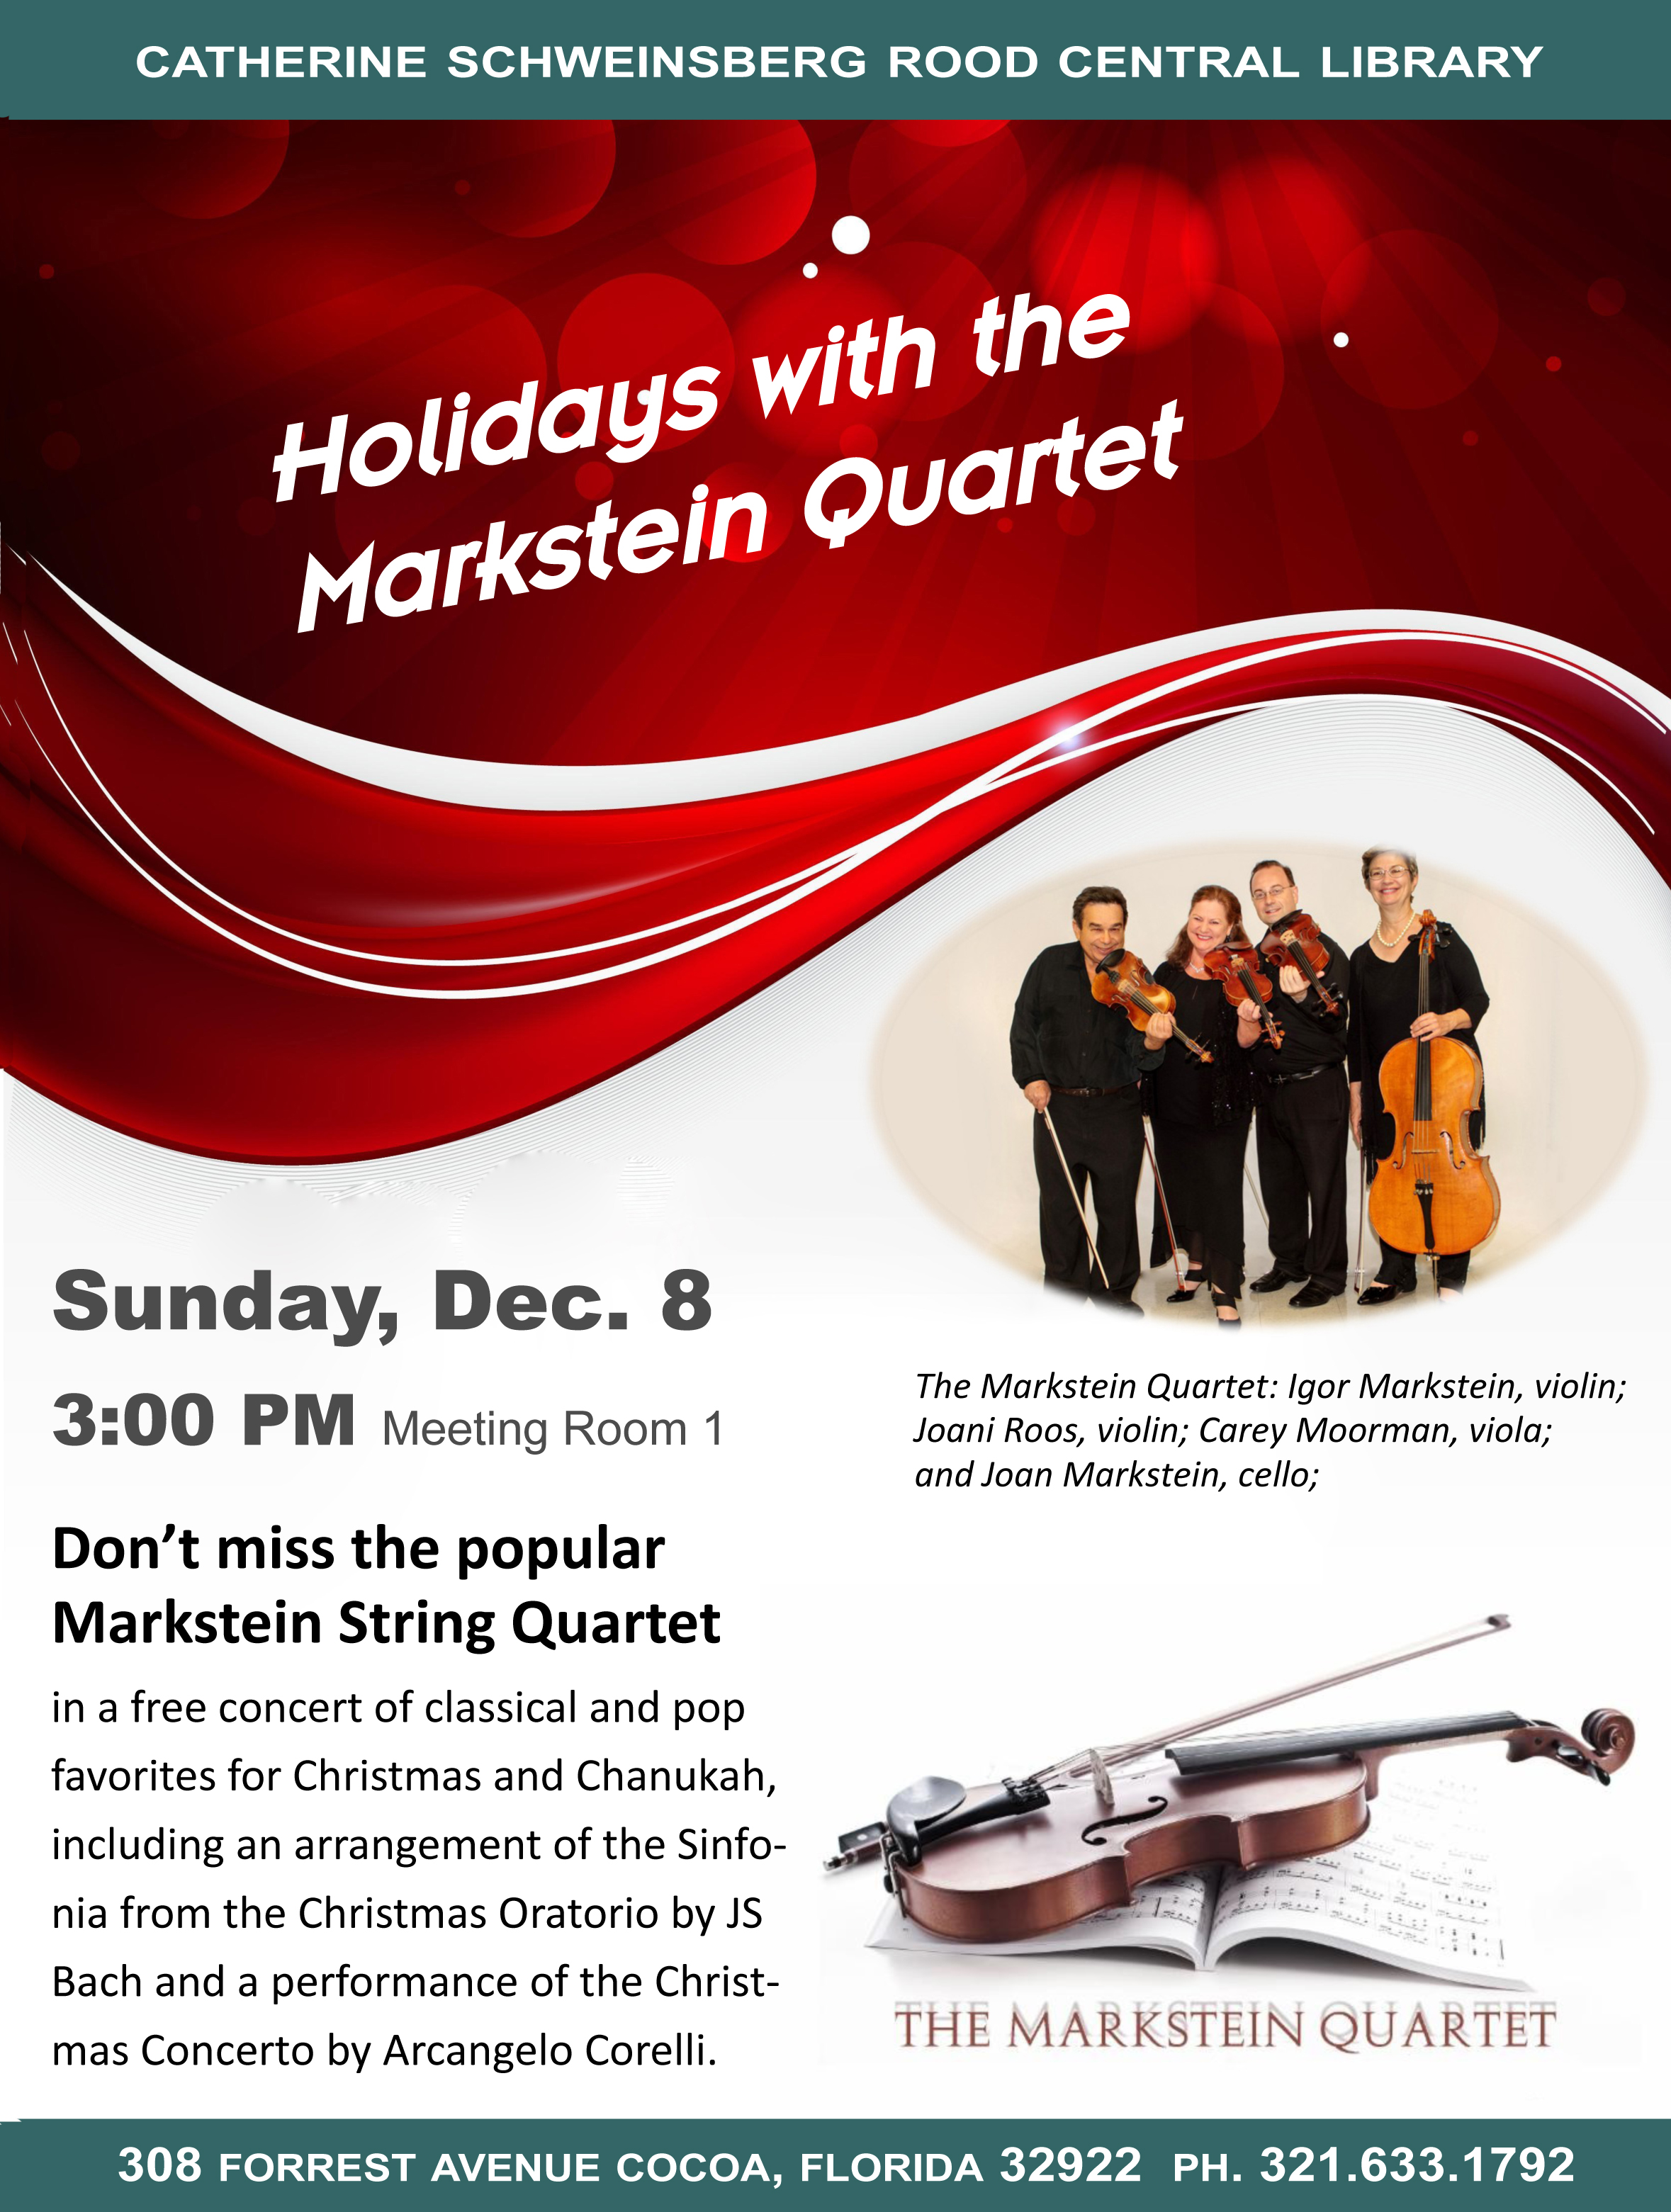 Enjoy 'Holidays with the Markstein Quartet' Dec. 8